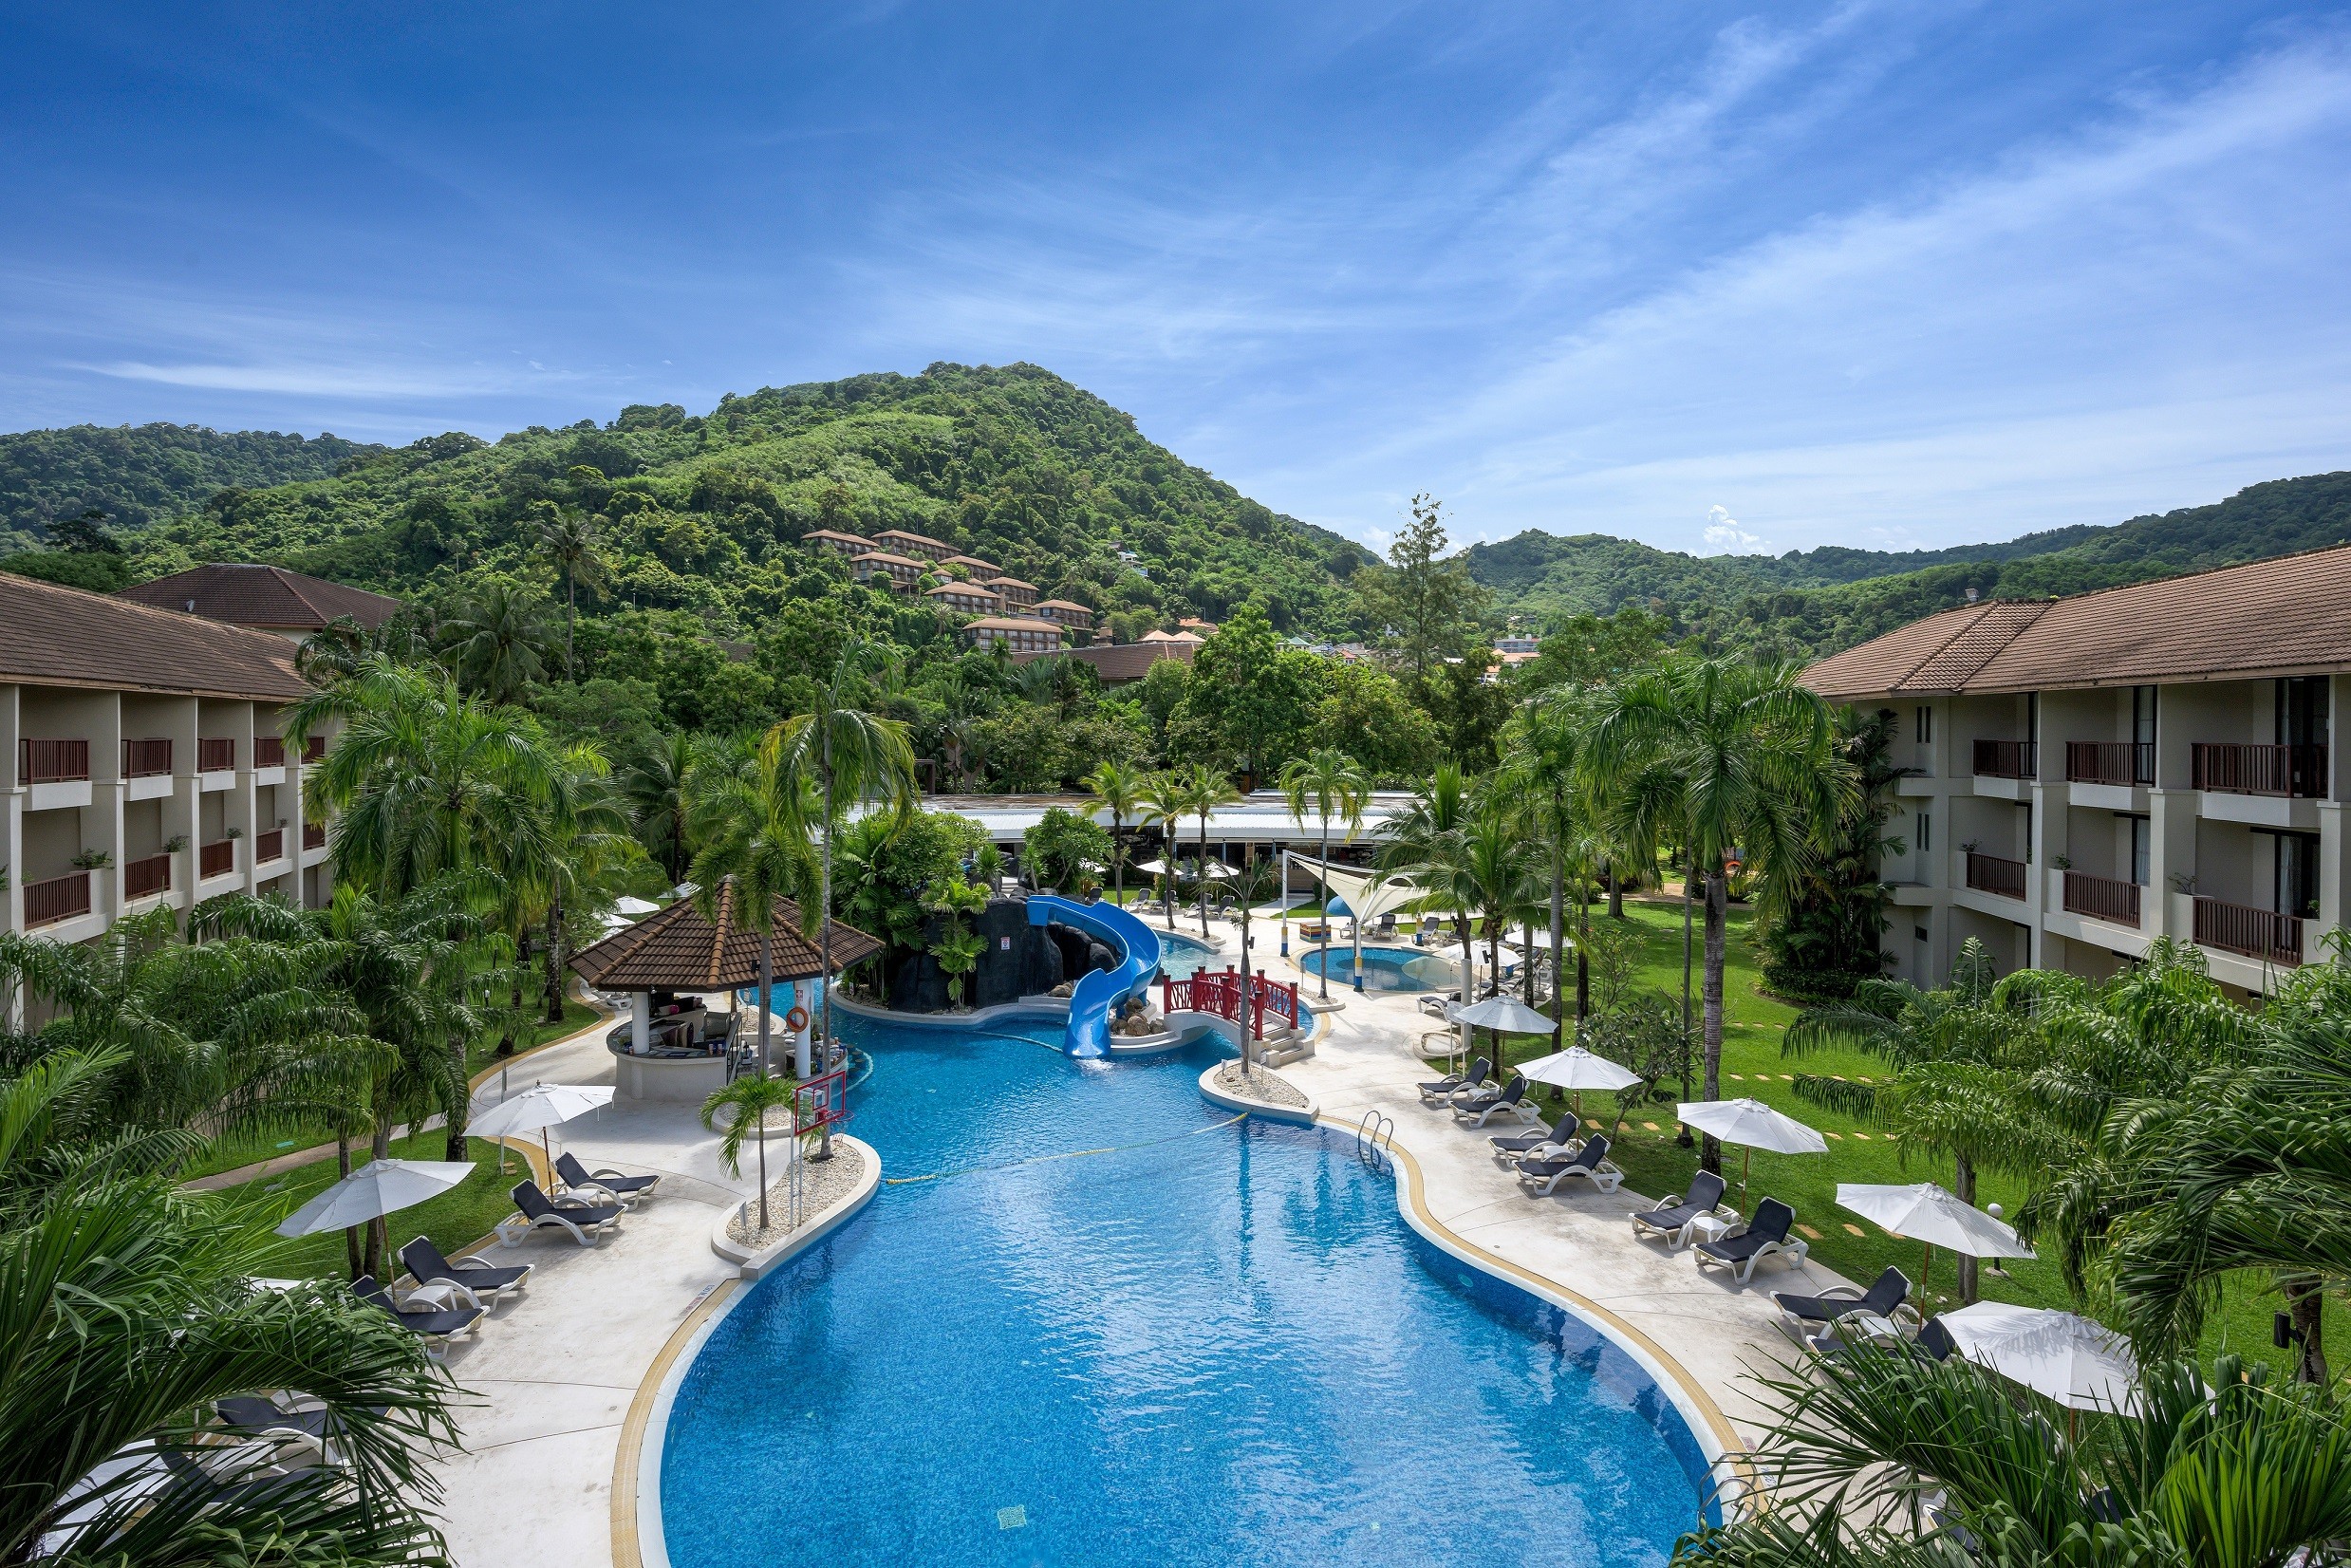 Centara announces re-opening of Centara Karon Resort Phuket